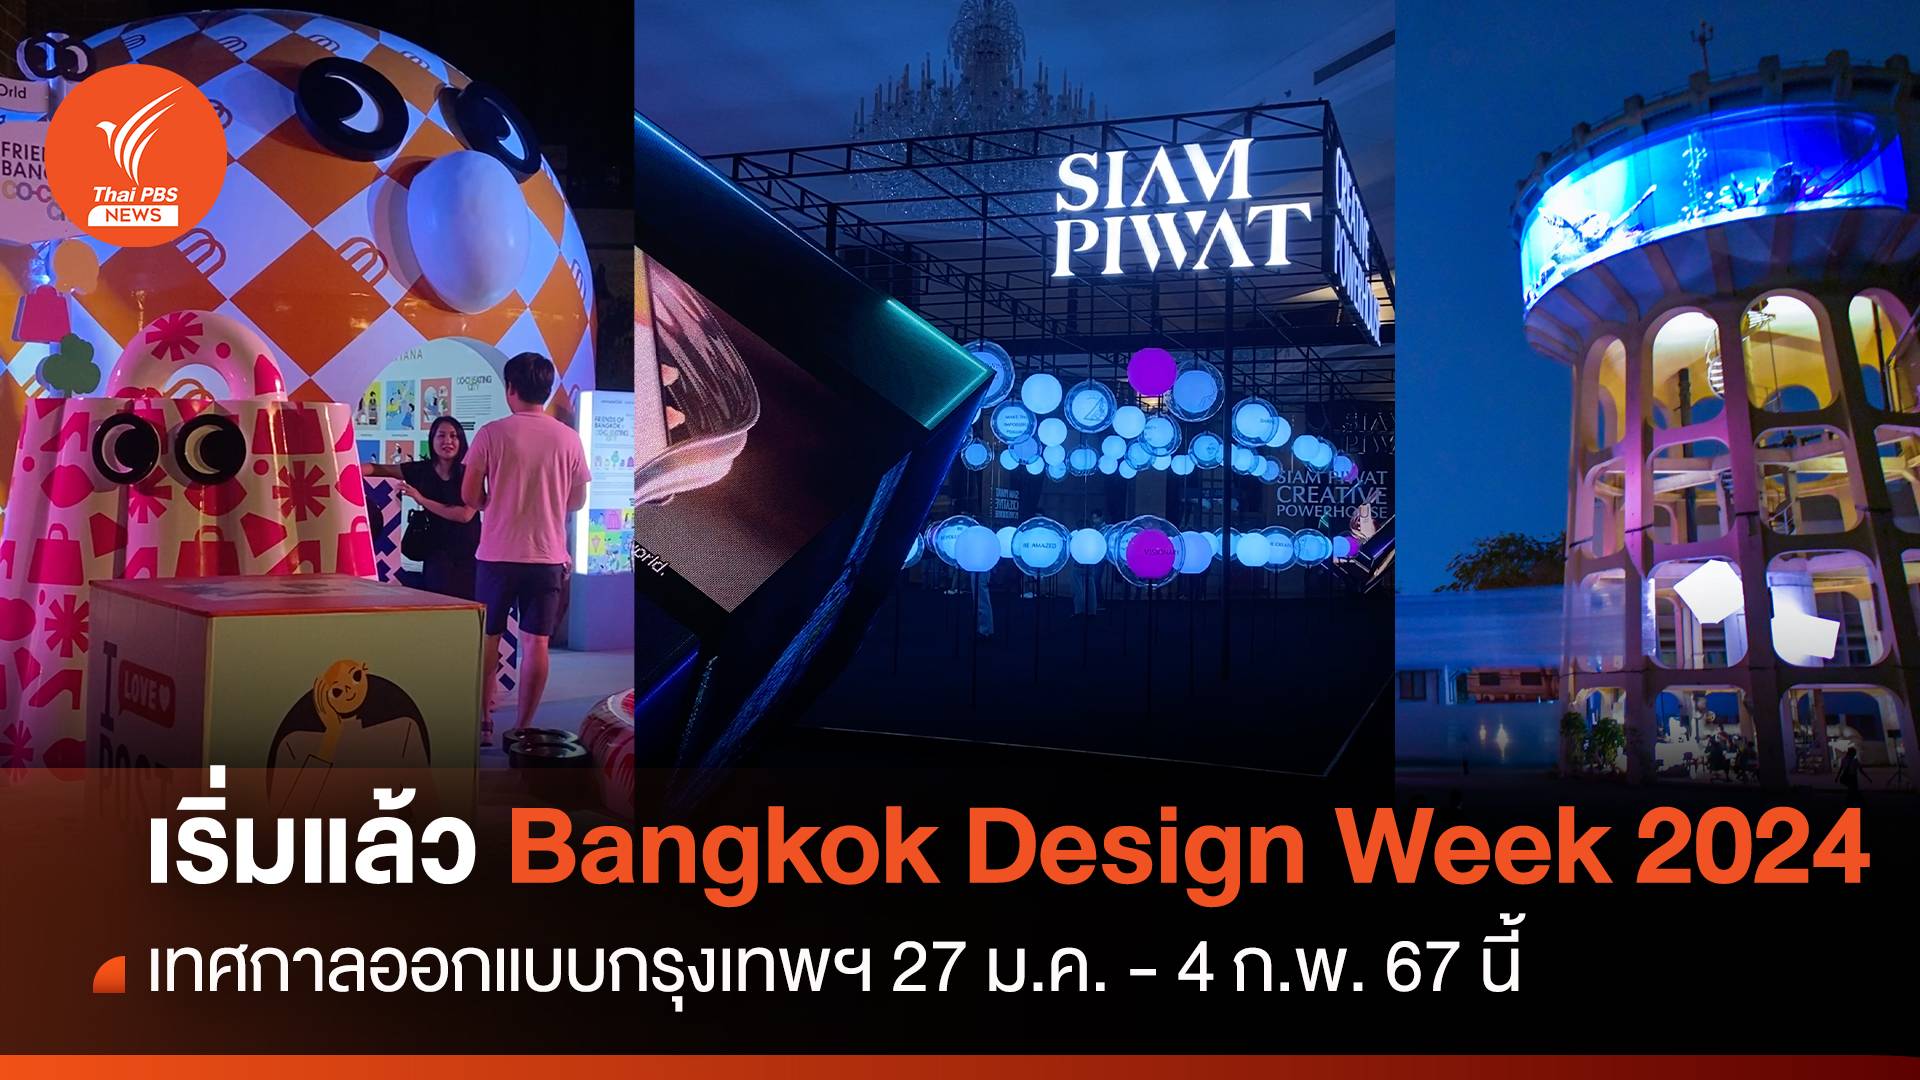 เริ่มแล้ว! เทศกาลออกแบบกรุงเทพฯ Bangkok Design Week 2024